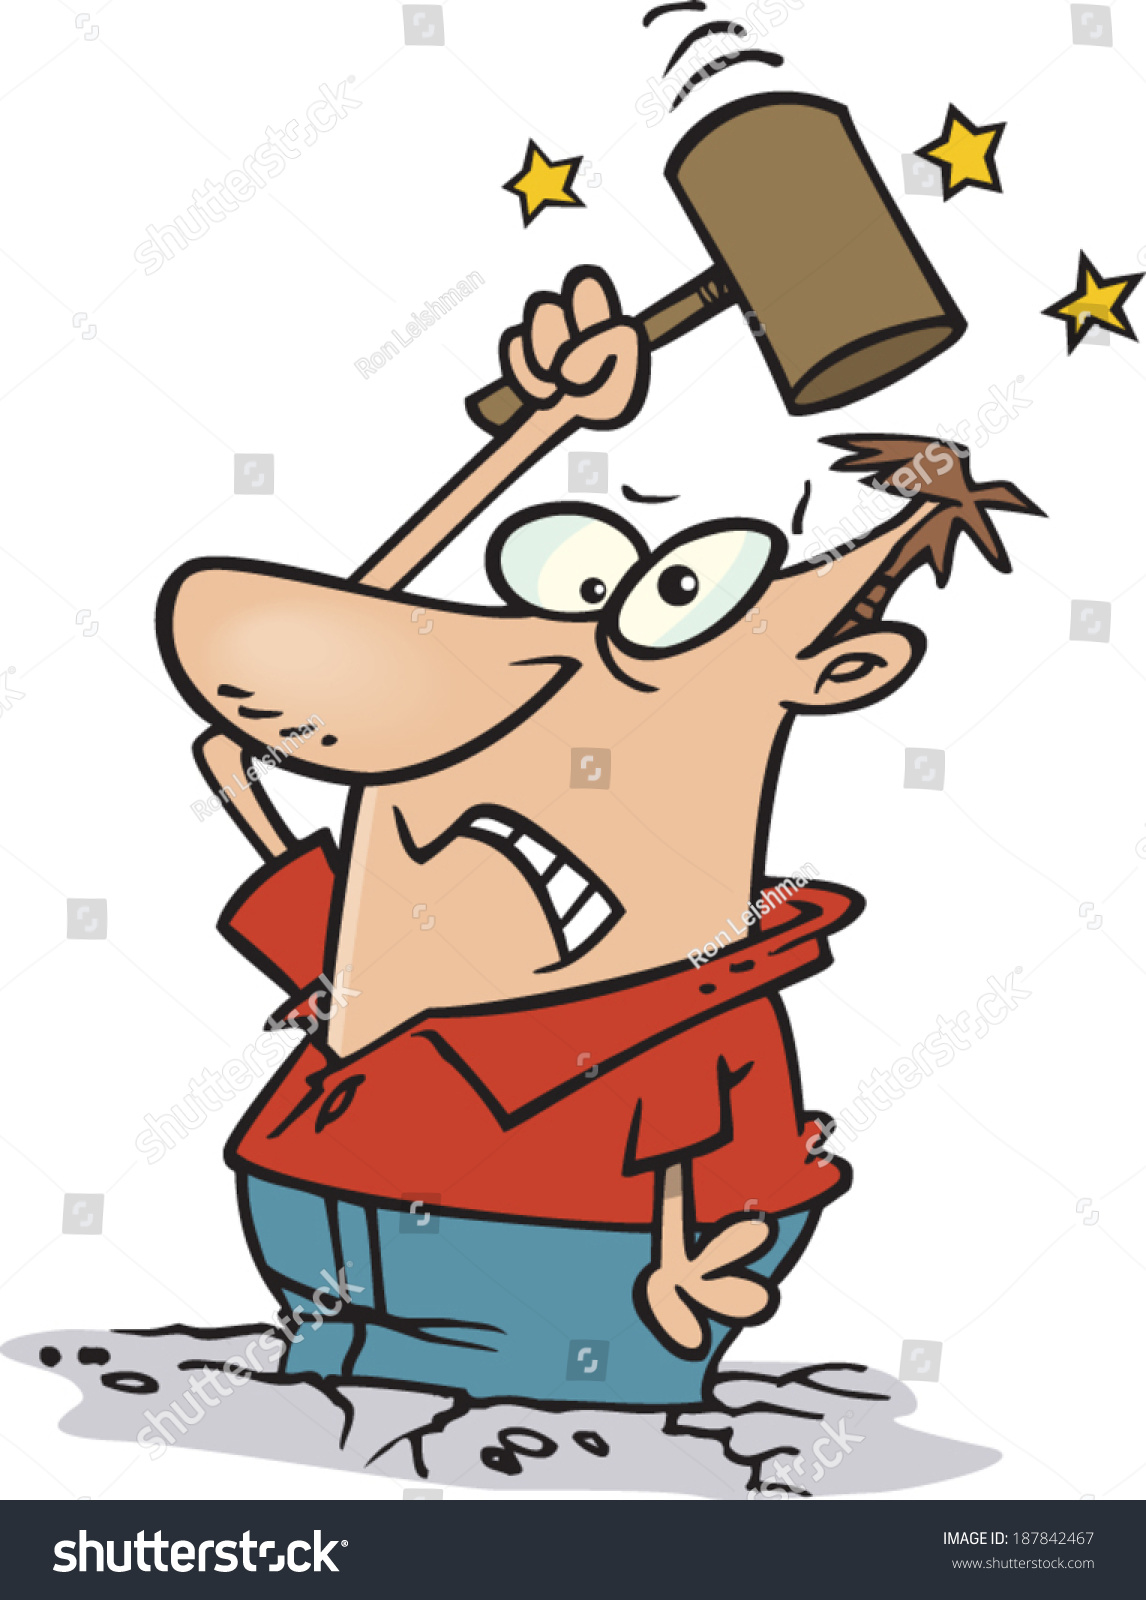 Cartoon Man Hitting Himself Mallet Stock Vector 187842467 - Shutterstock